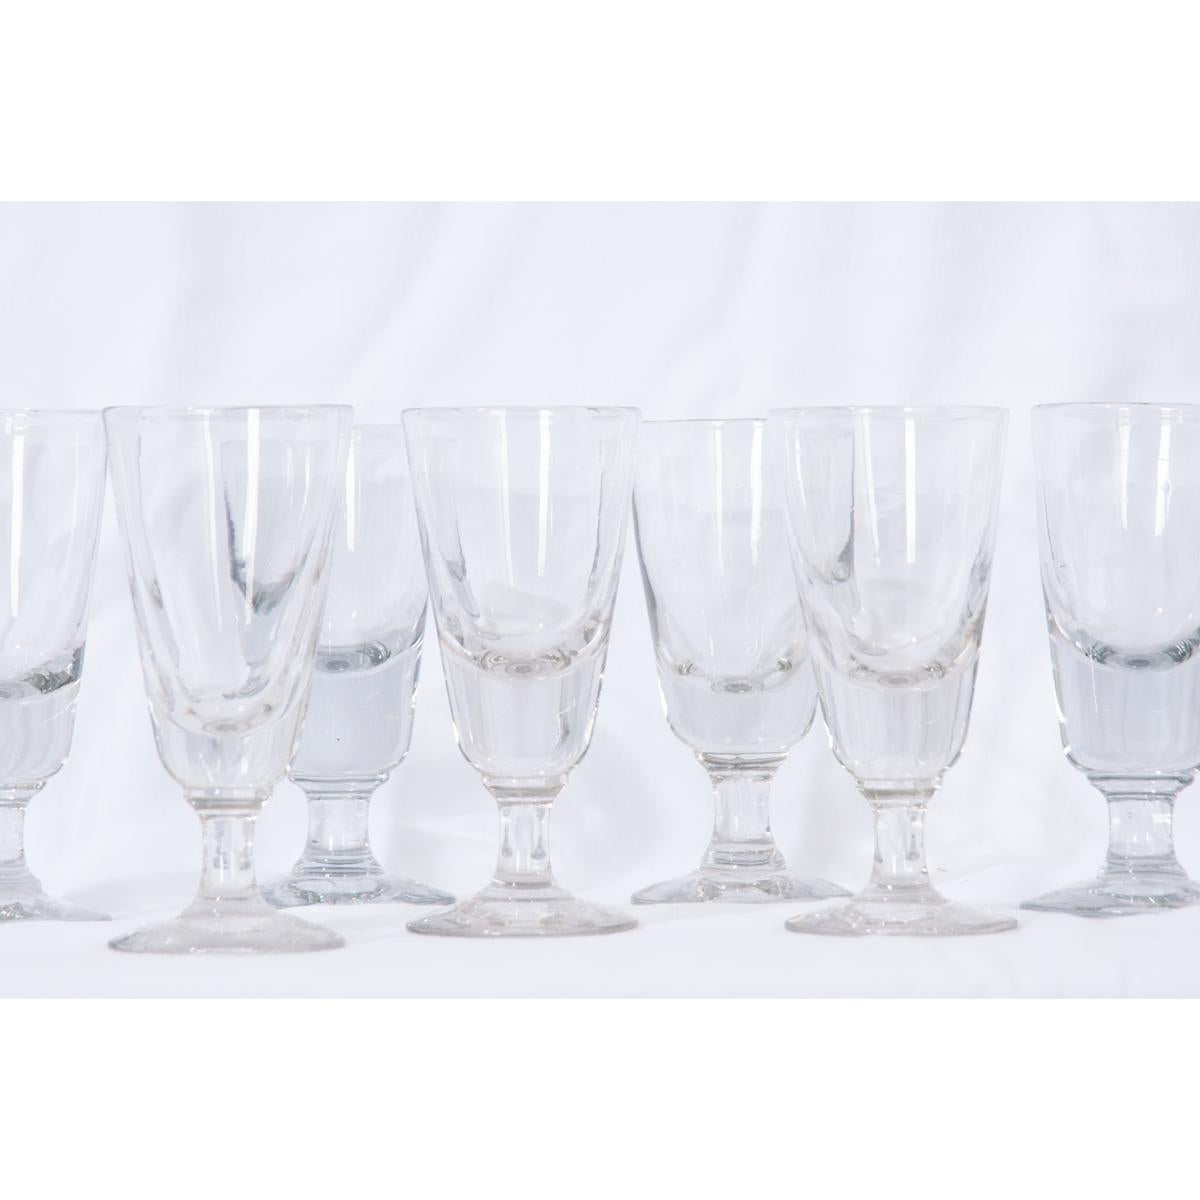 Ensemble de verres français, vers 1880. Ces lourds verres à absinthe sont des pièces uniques soufflées à la main. Vendu uniquement par lot de six.